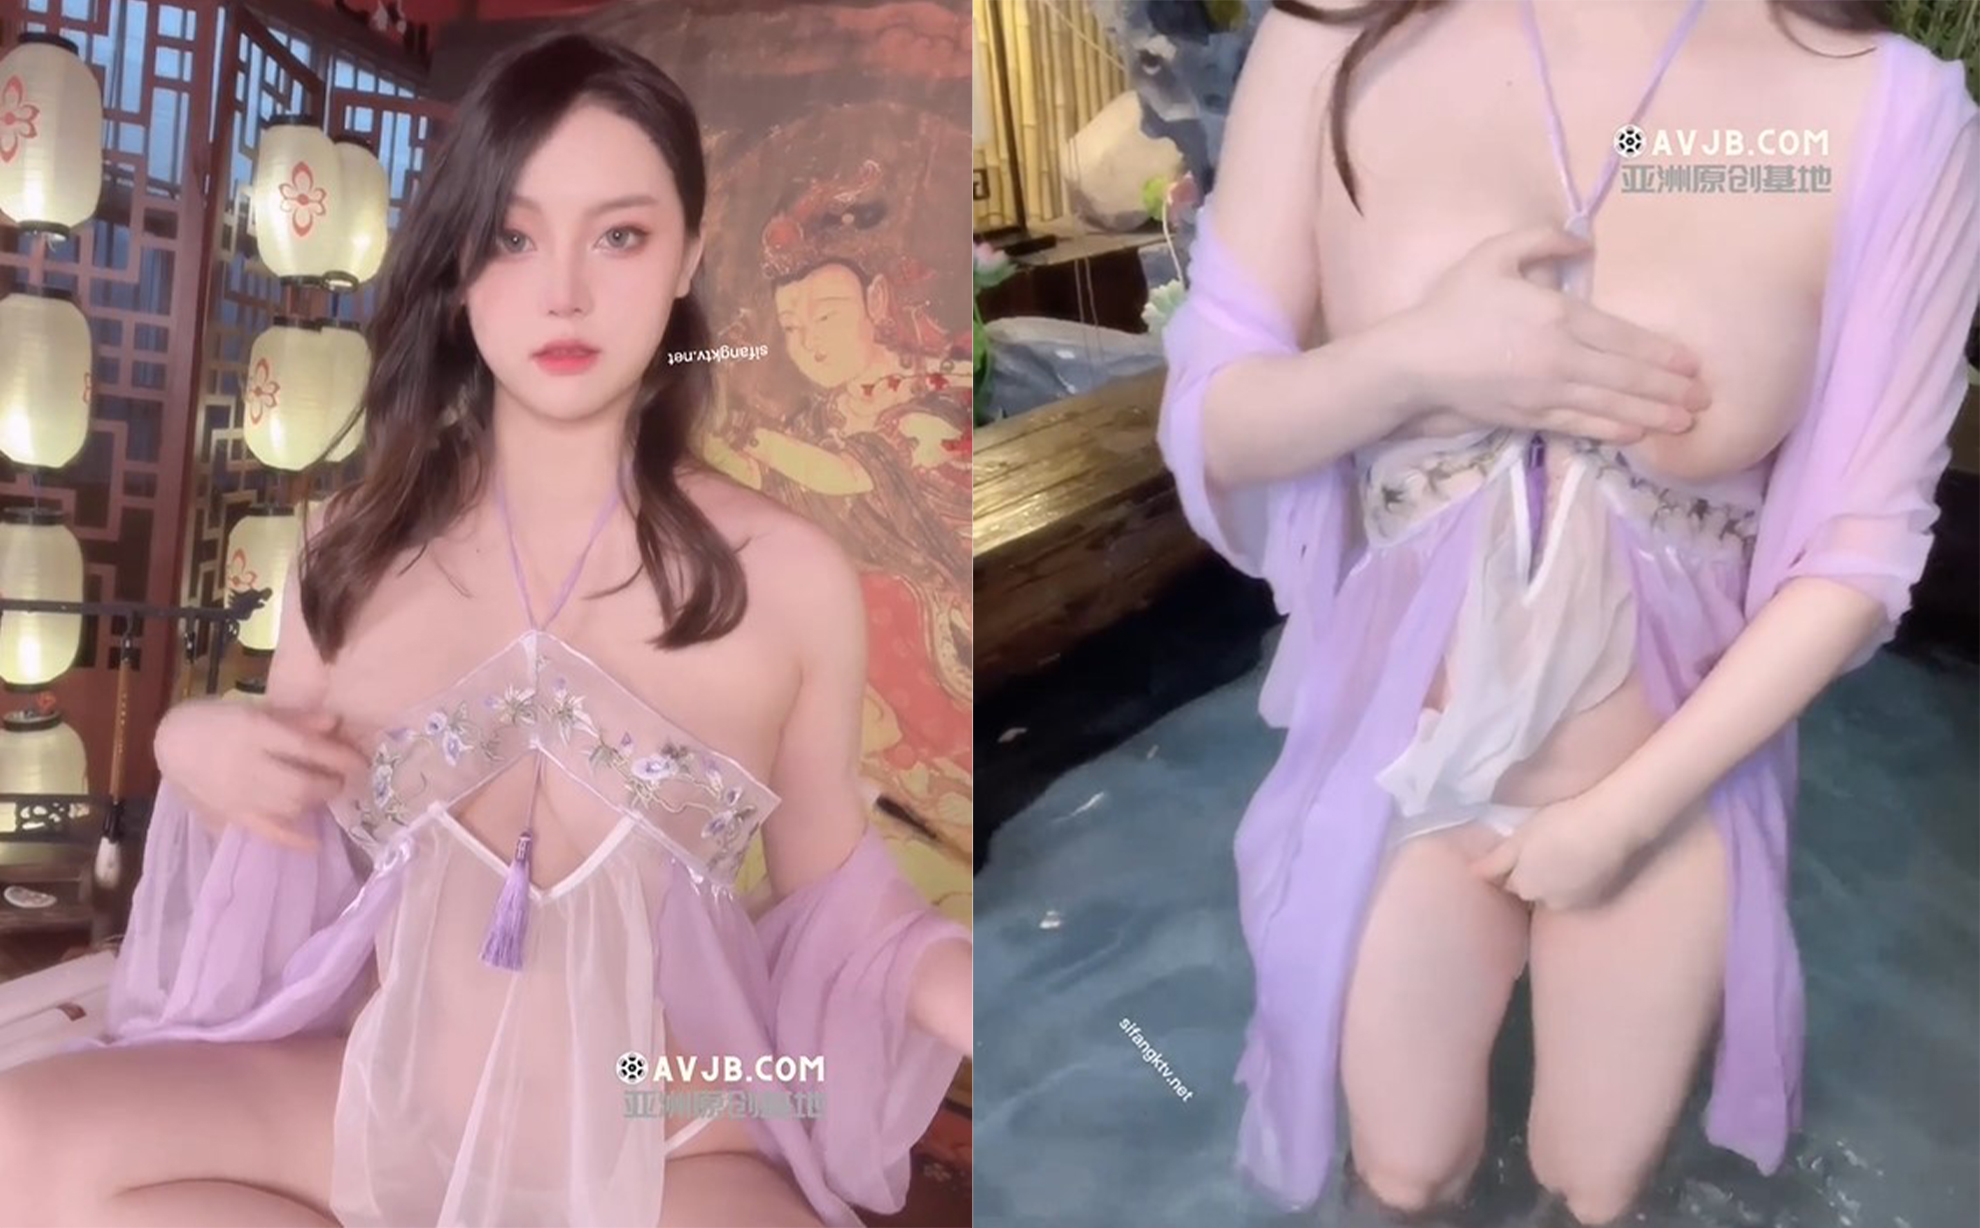 Rò rỉ mới nhất vào tháng 2 là người mẫu [Doubanjiang] của Xiuren.com bị chụp ảnh riêng tư trên quy mô lớn, mặc quần lót, nhỏ giọt sáp, đang tắm, xoa ngực và buộc dây xích chó vào du thuyền.